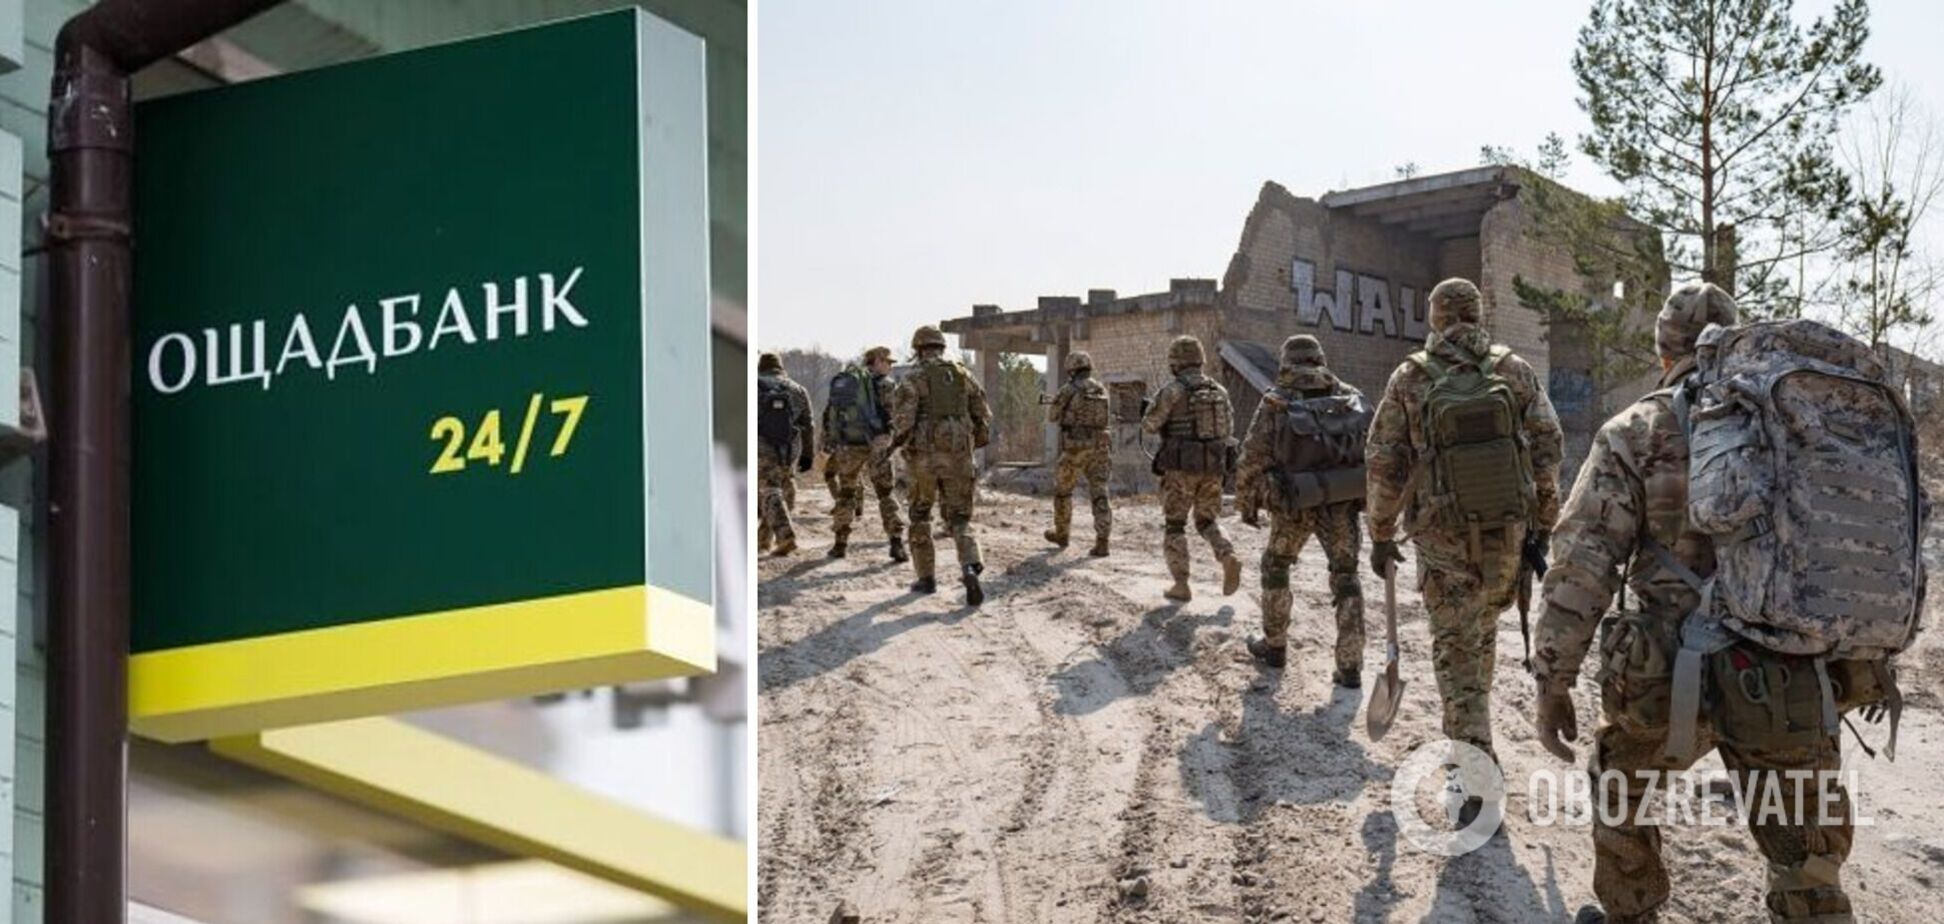 Ощадбанк заявив про підтримку своїх співробітників, які вступлять до лав резерву територіальної оборони